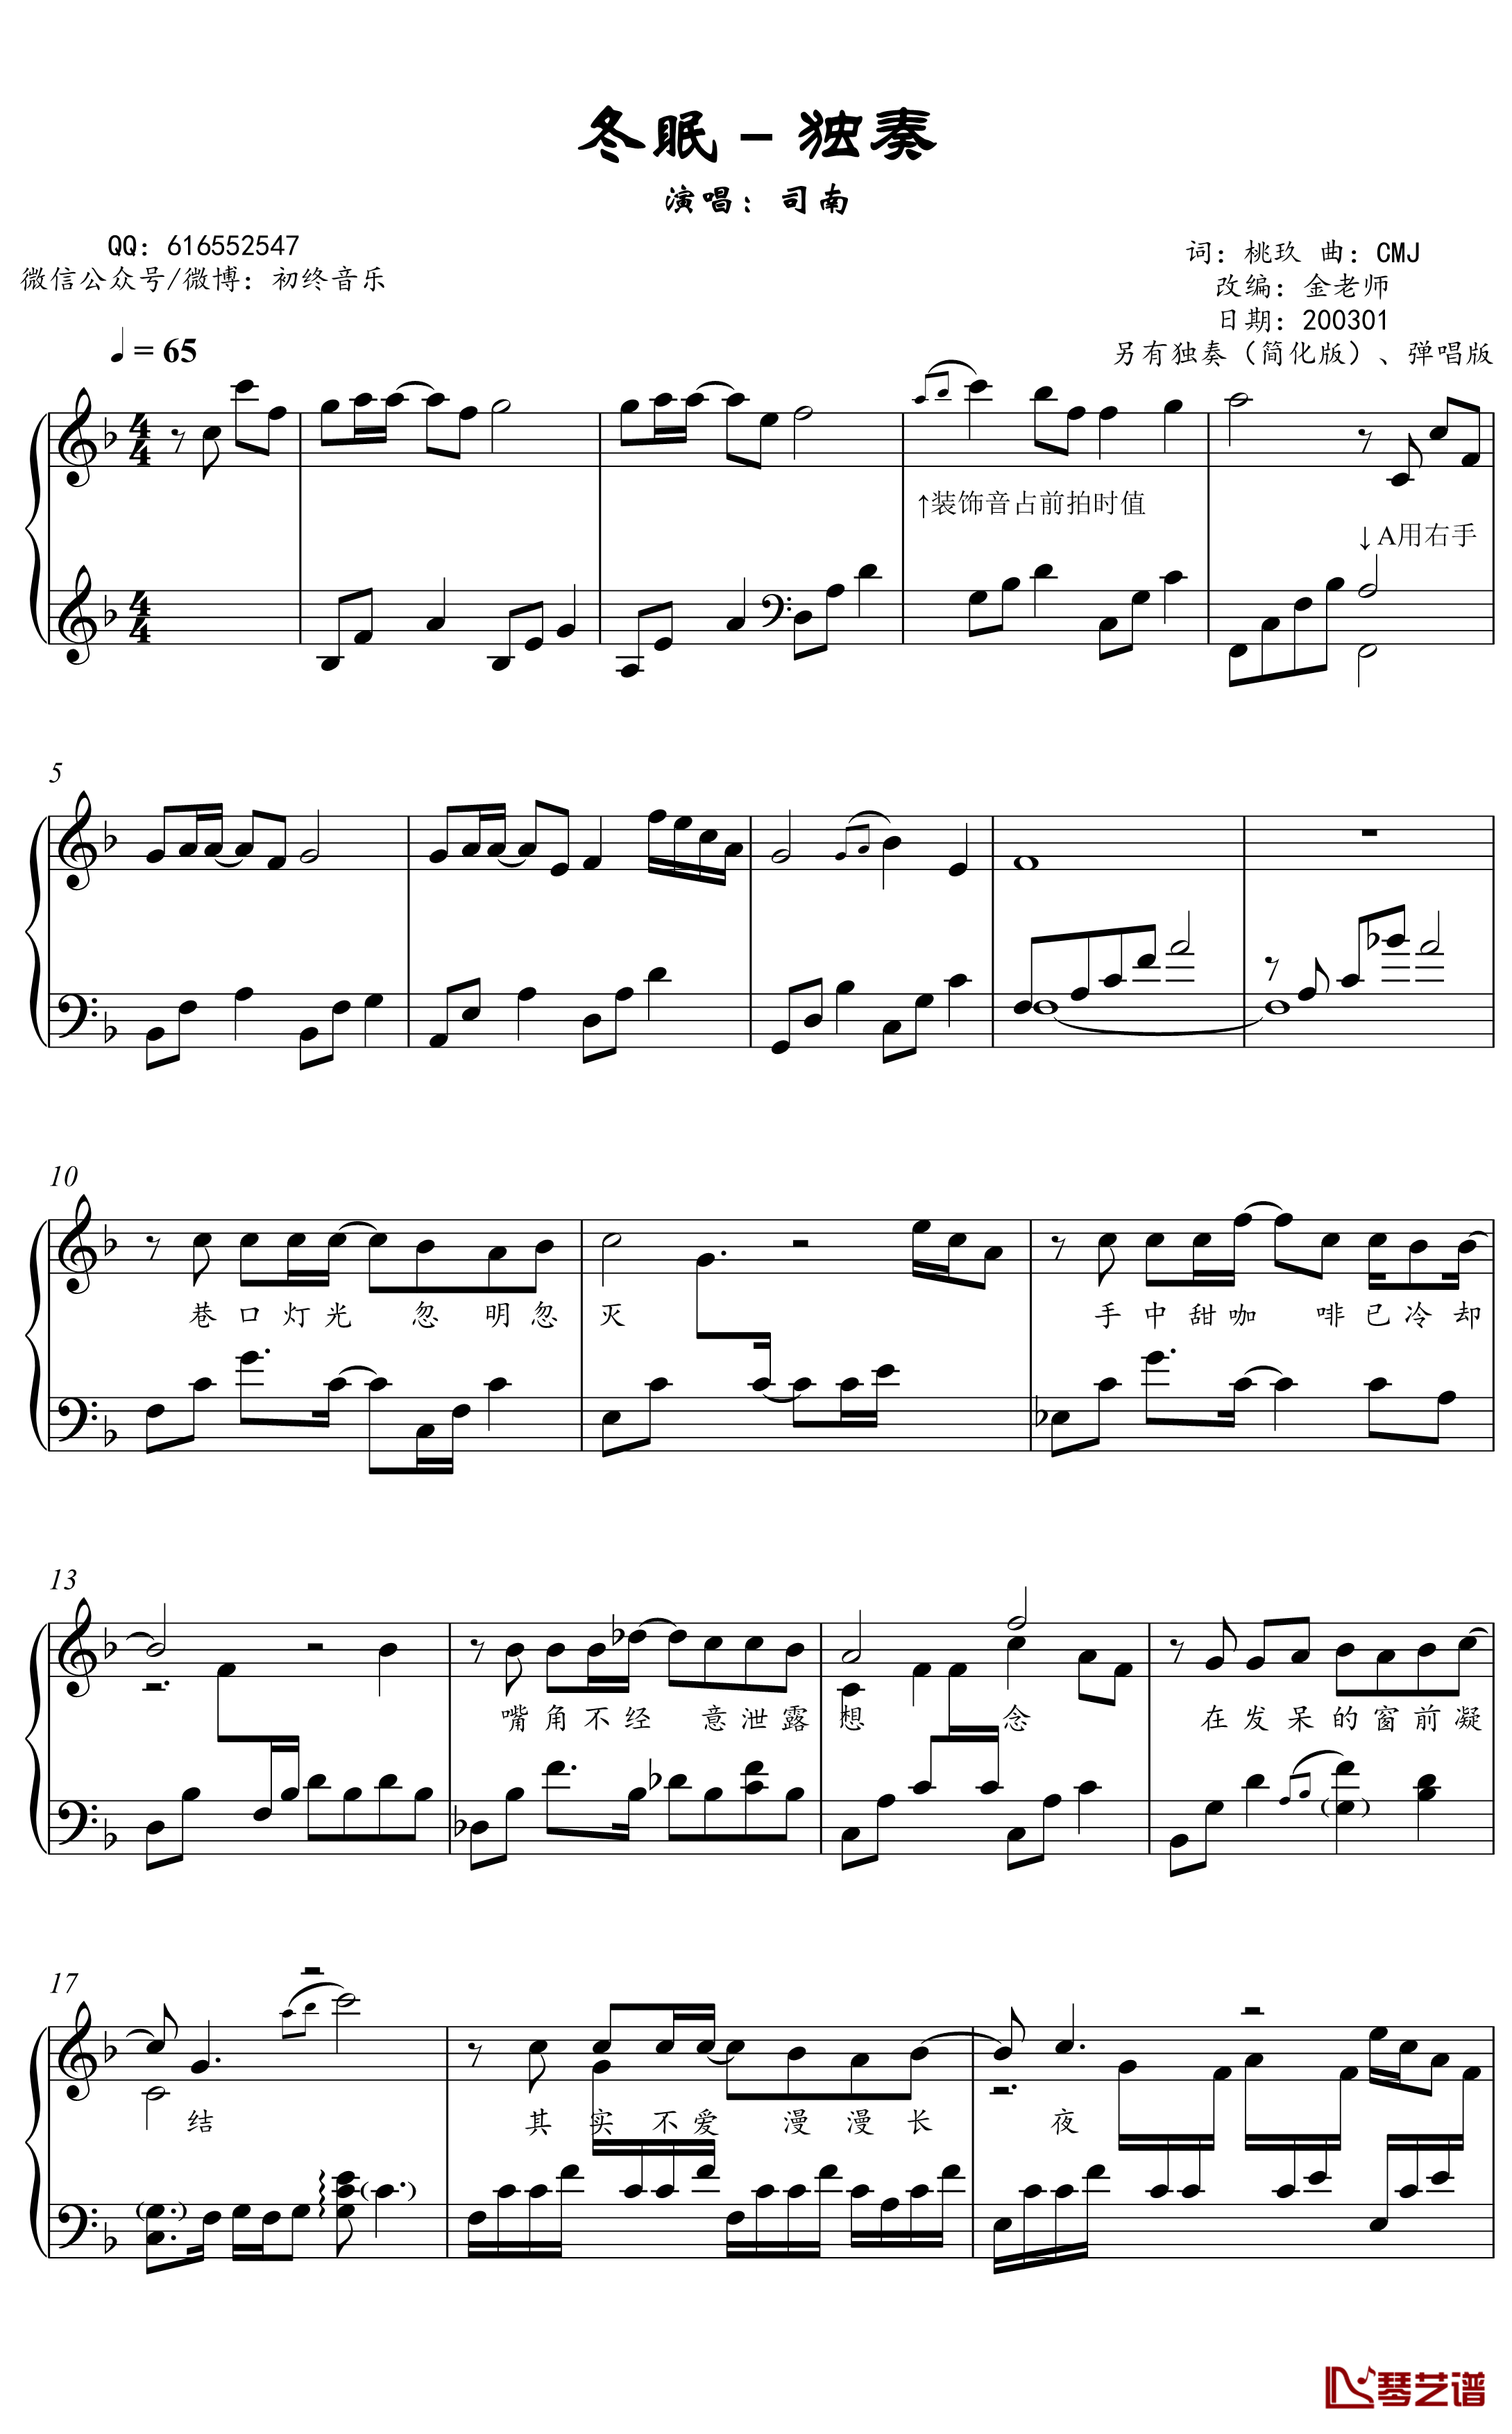 冬眠钢琴谱-金老师独奏谱2003012